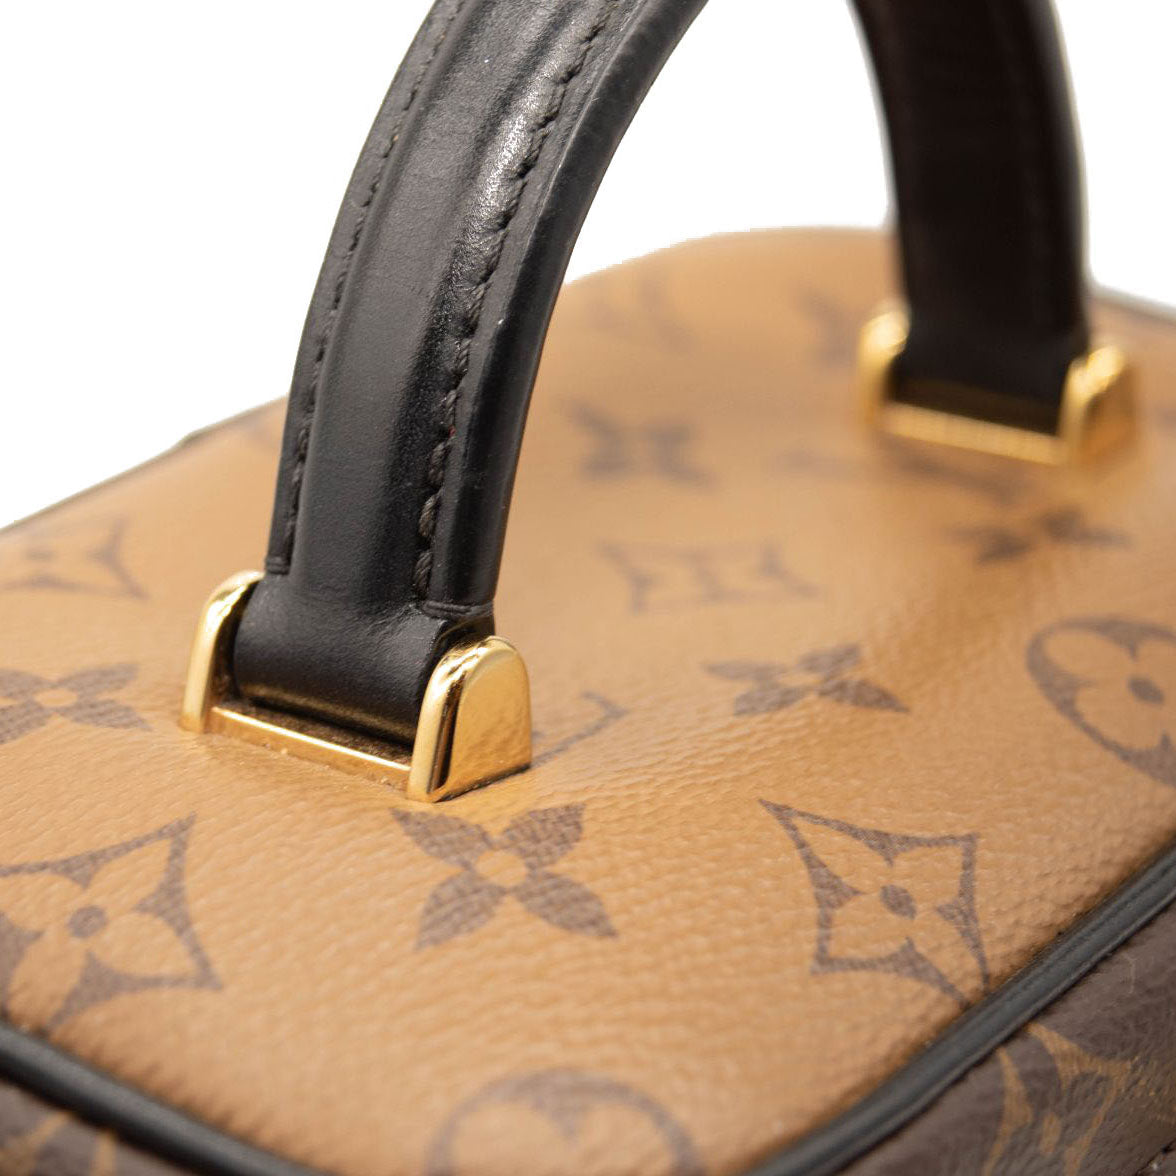 Louis Vuitton Vanity PM Black/Beige Empreinte Leather